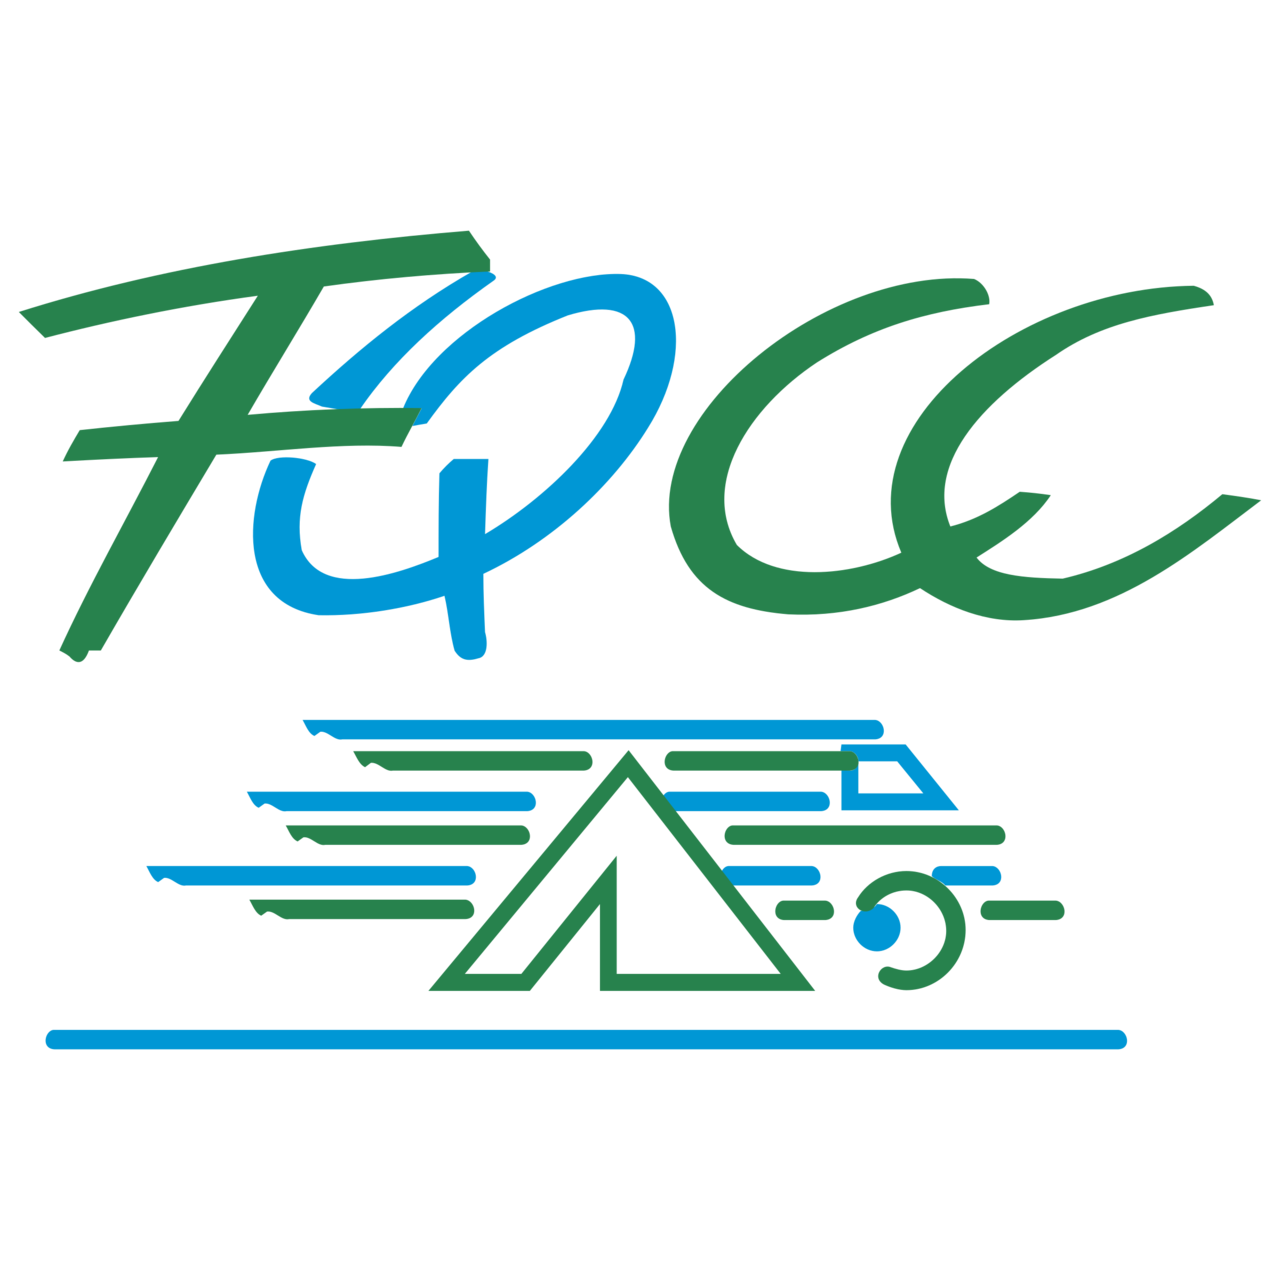 FQCC Transparent Logo PNG